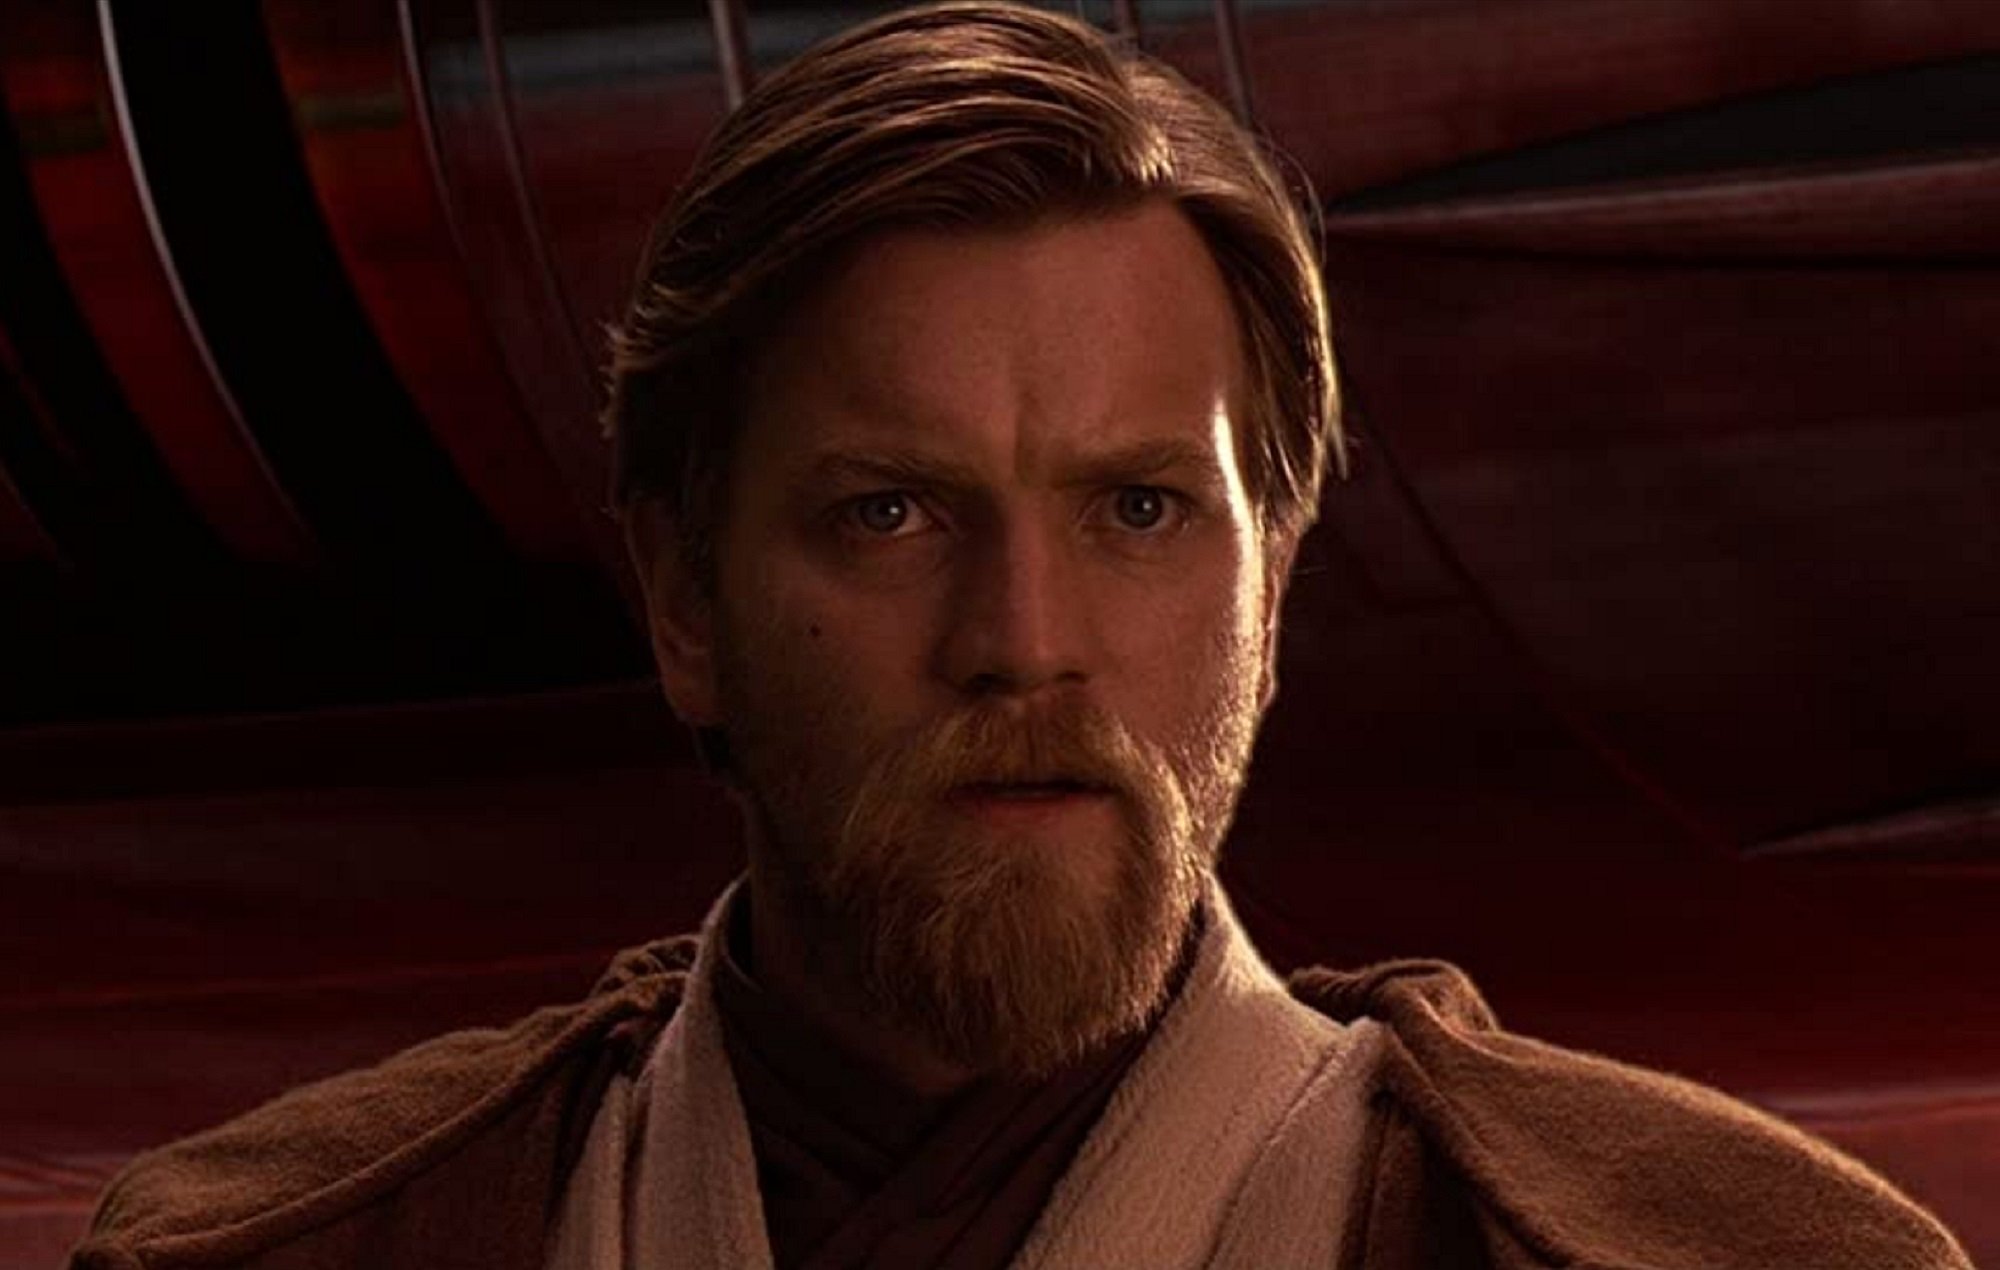 Star Wars Kenobi spoilers focus on Ewan McGregor as Obi-Wan Kenobi, pictured here looking concerned, in brown Jedi robes